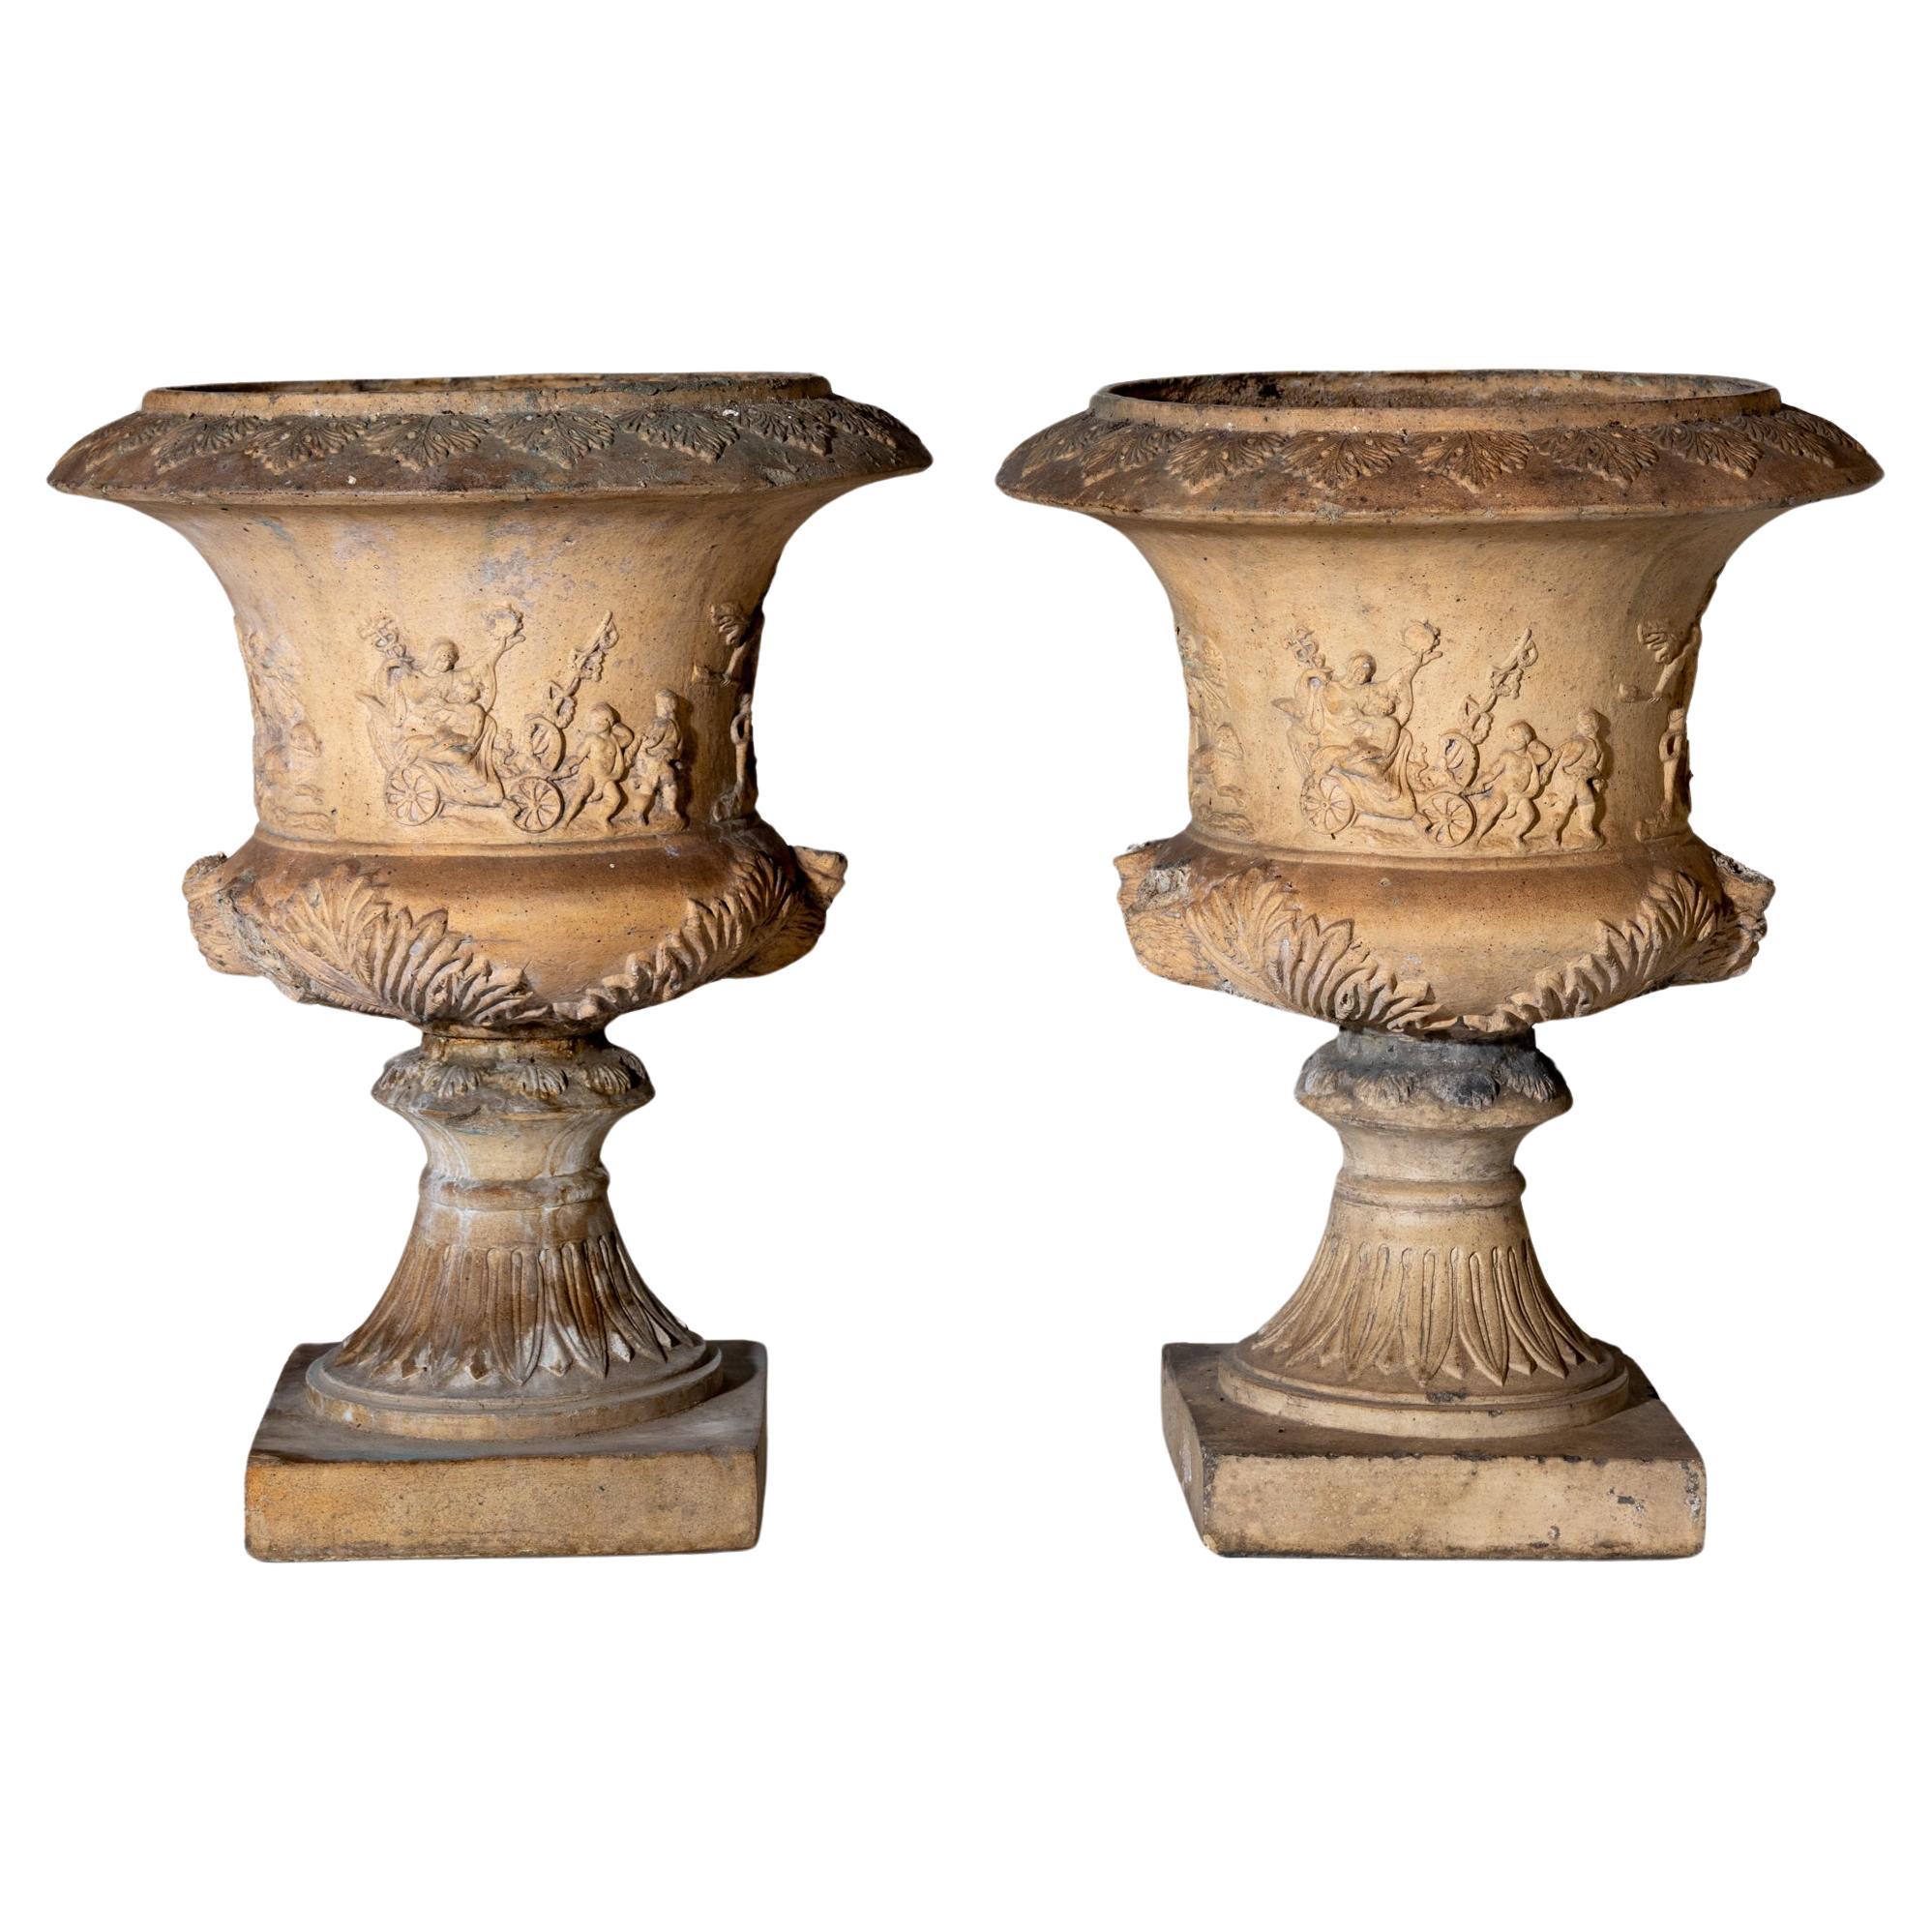 Vases craqueleurs en terre cuite, Italie 2e moitié du 19e siècle